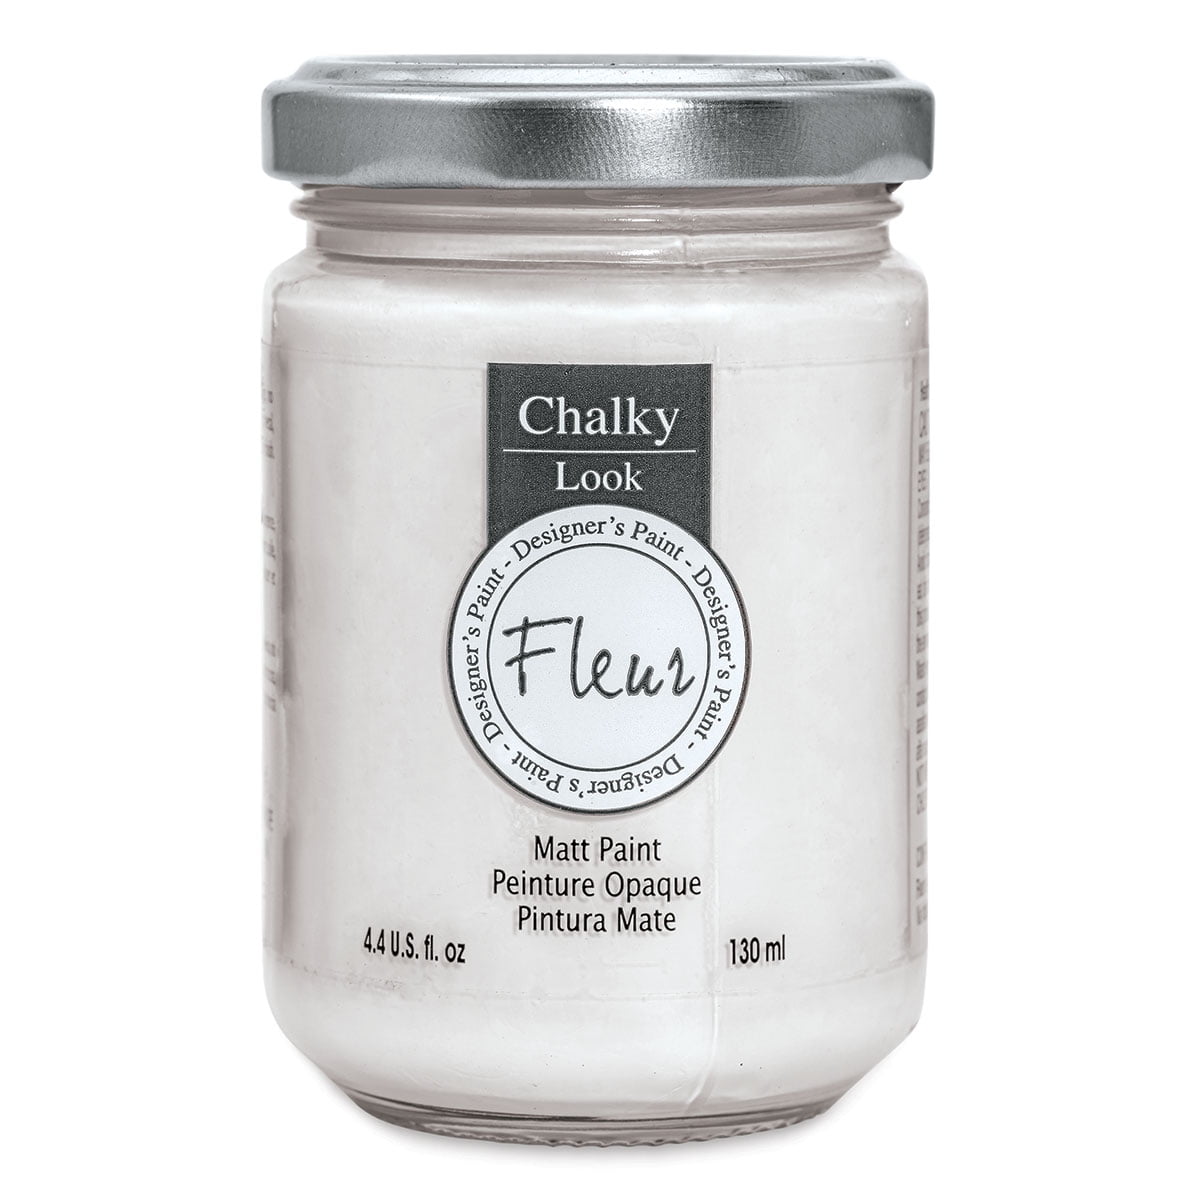 Chalk White - Fleur Paint